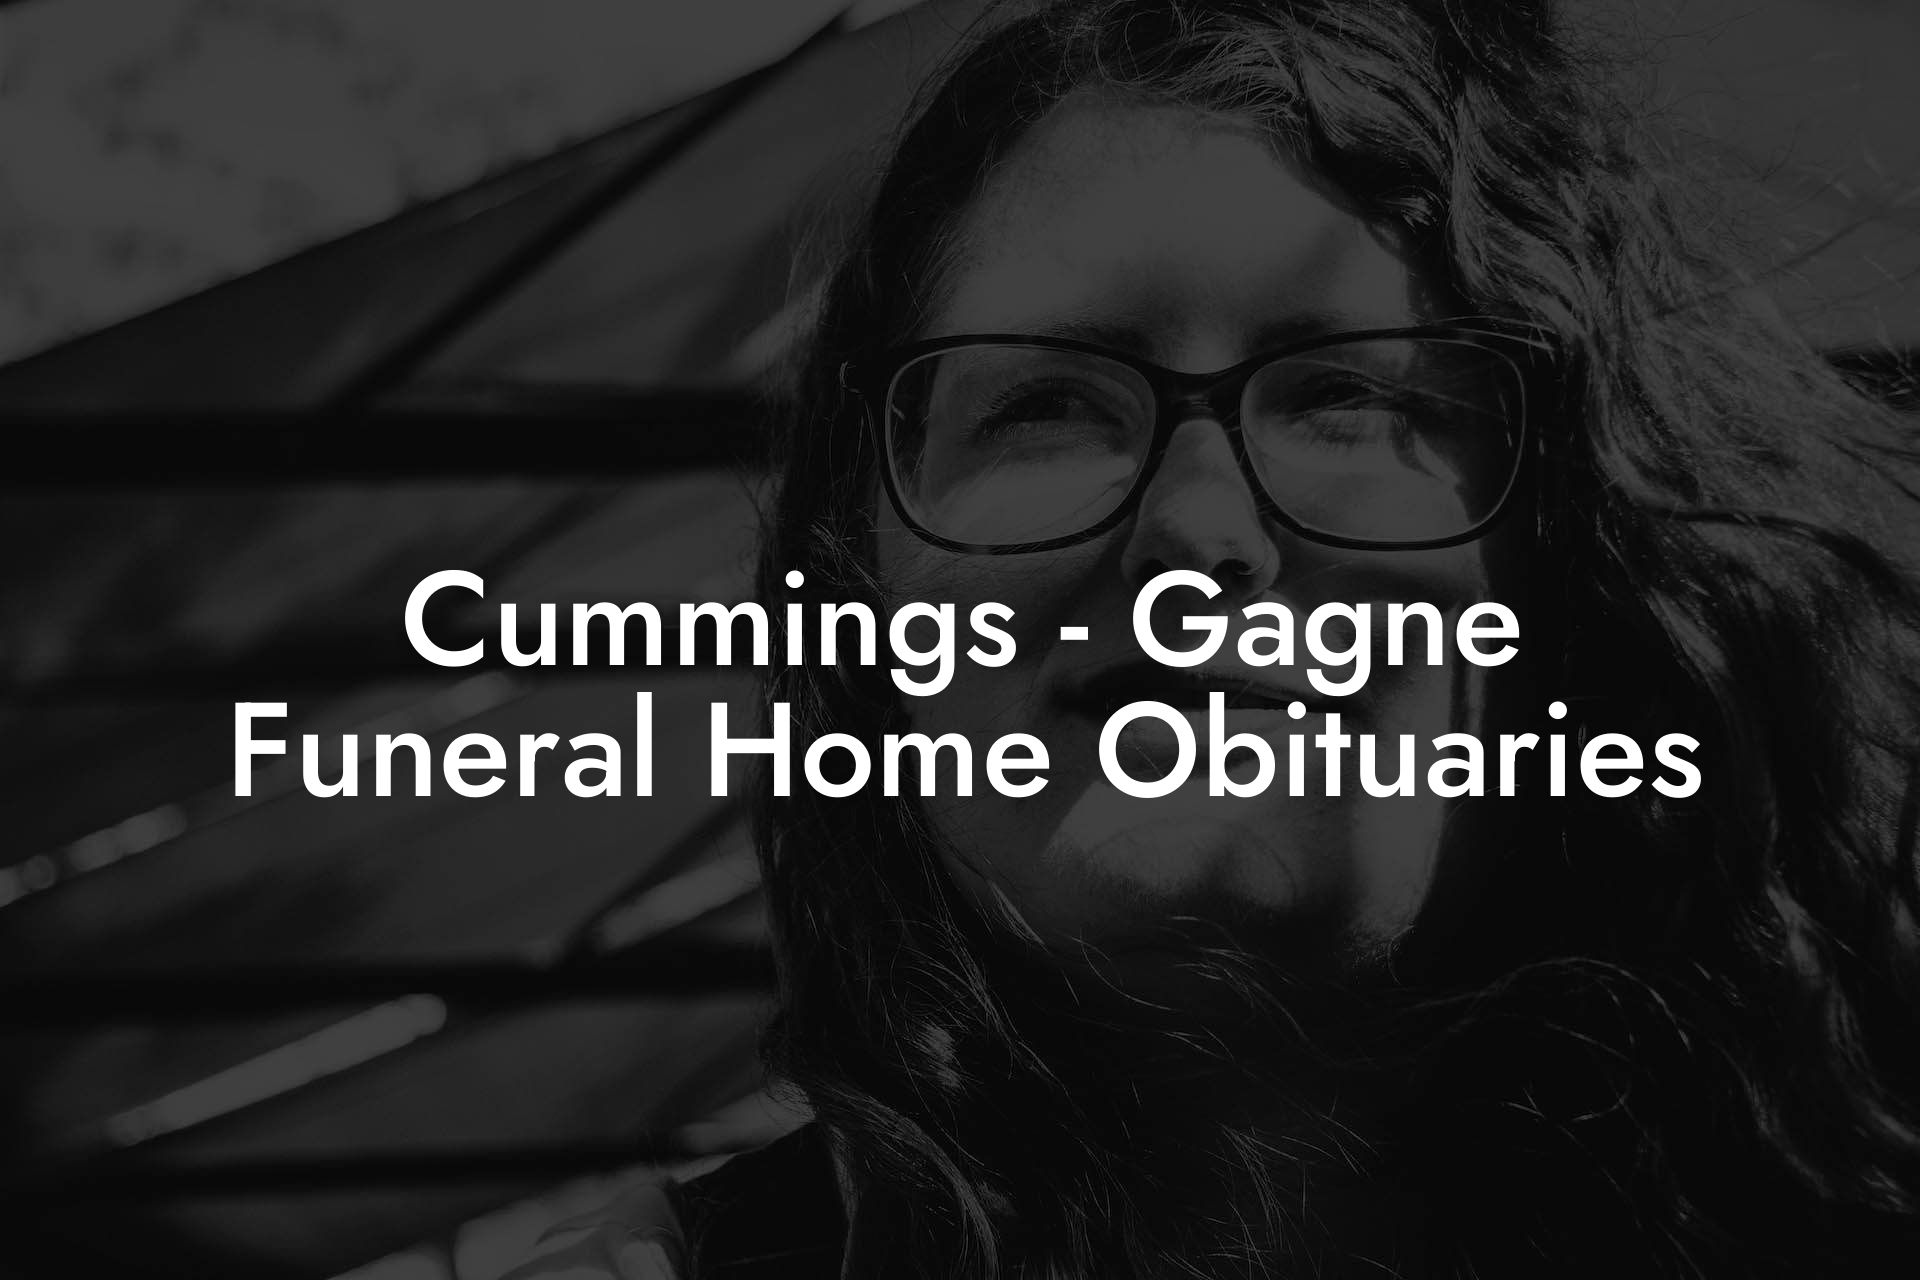 Cummings - Gagne Funeral Home Obituaries